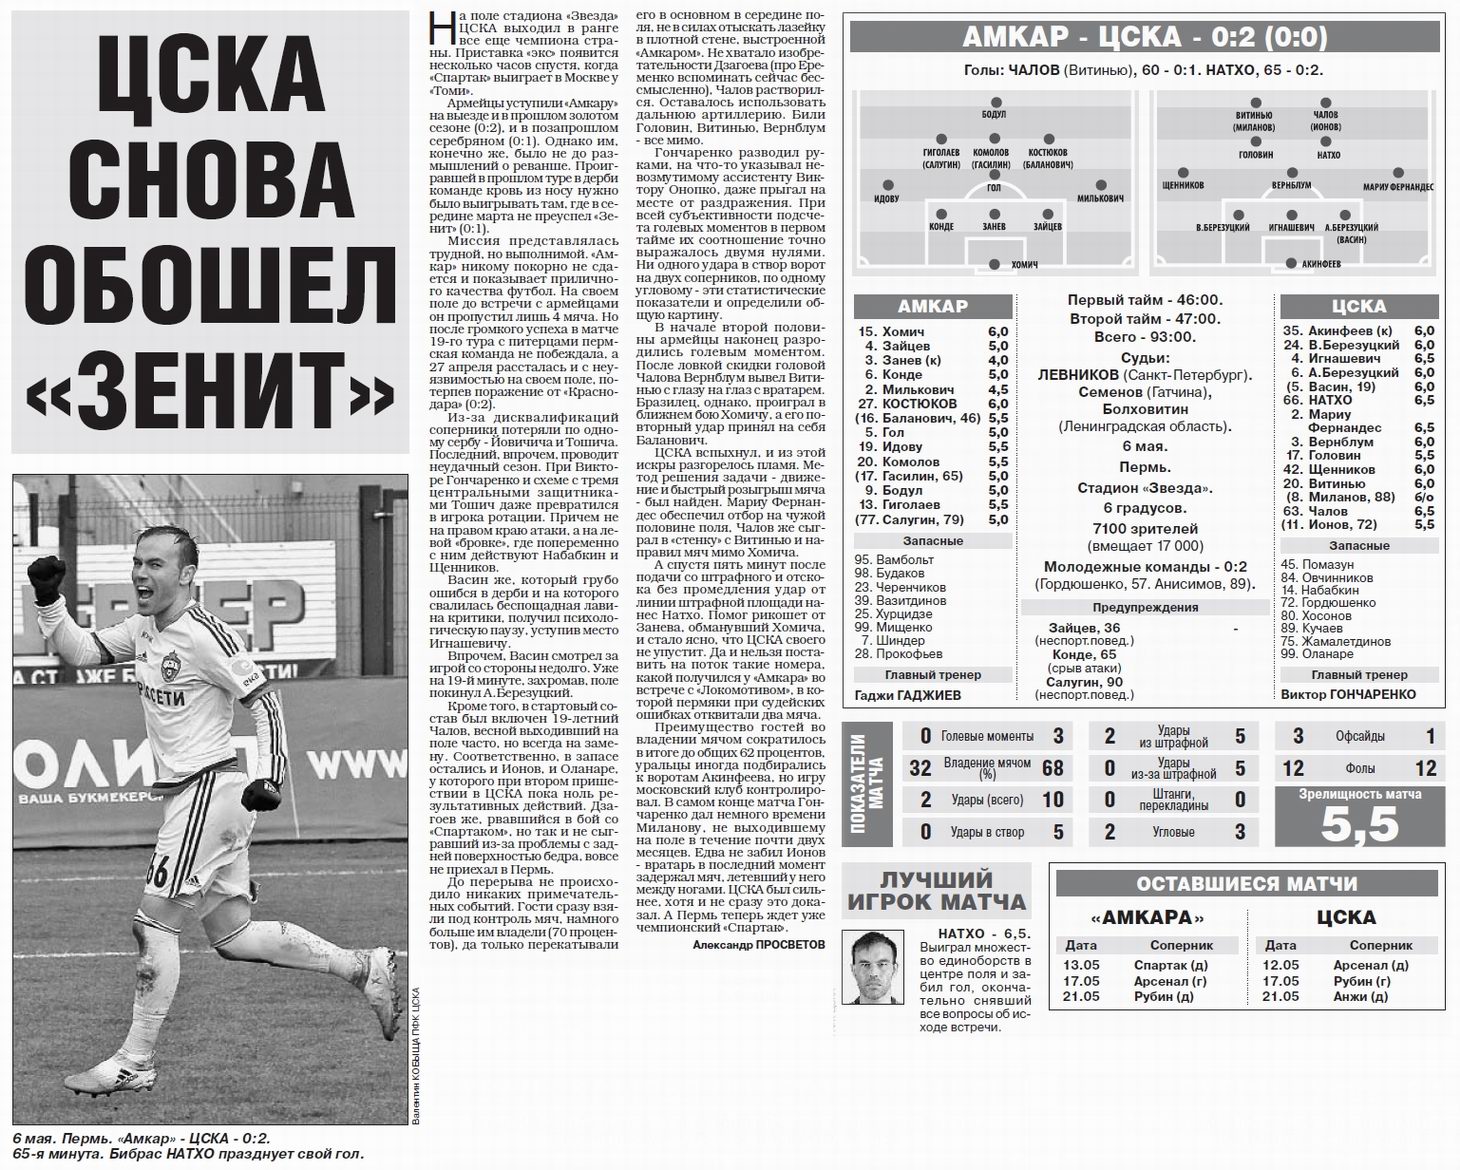 2017-05-06.Amkar-CSKA